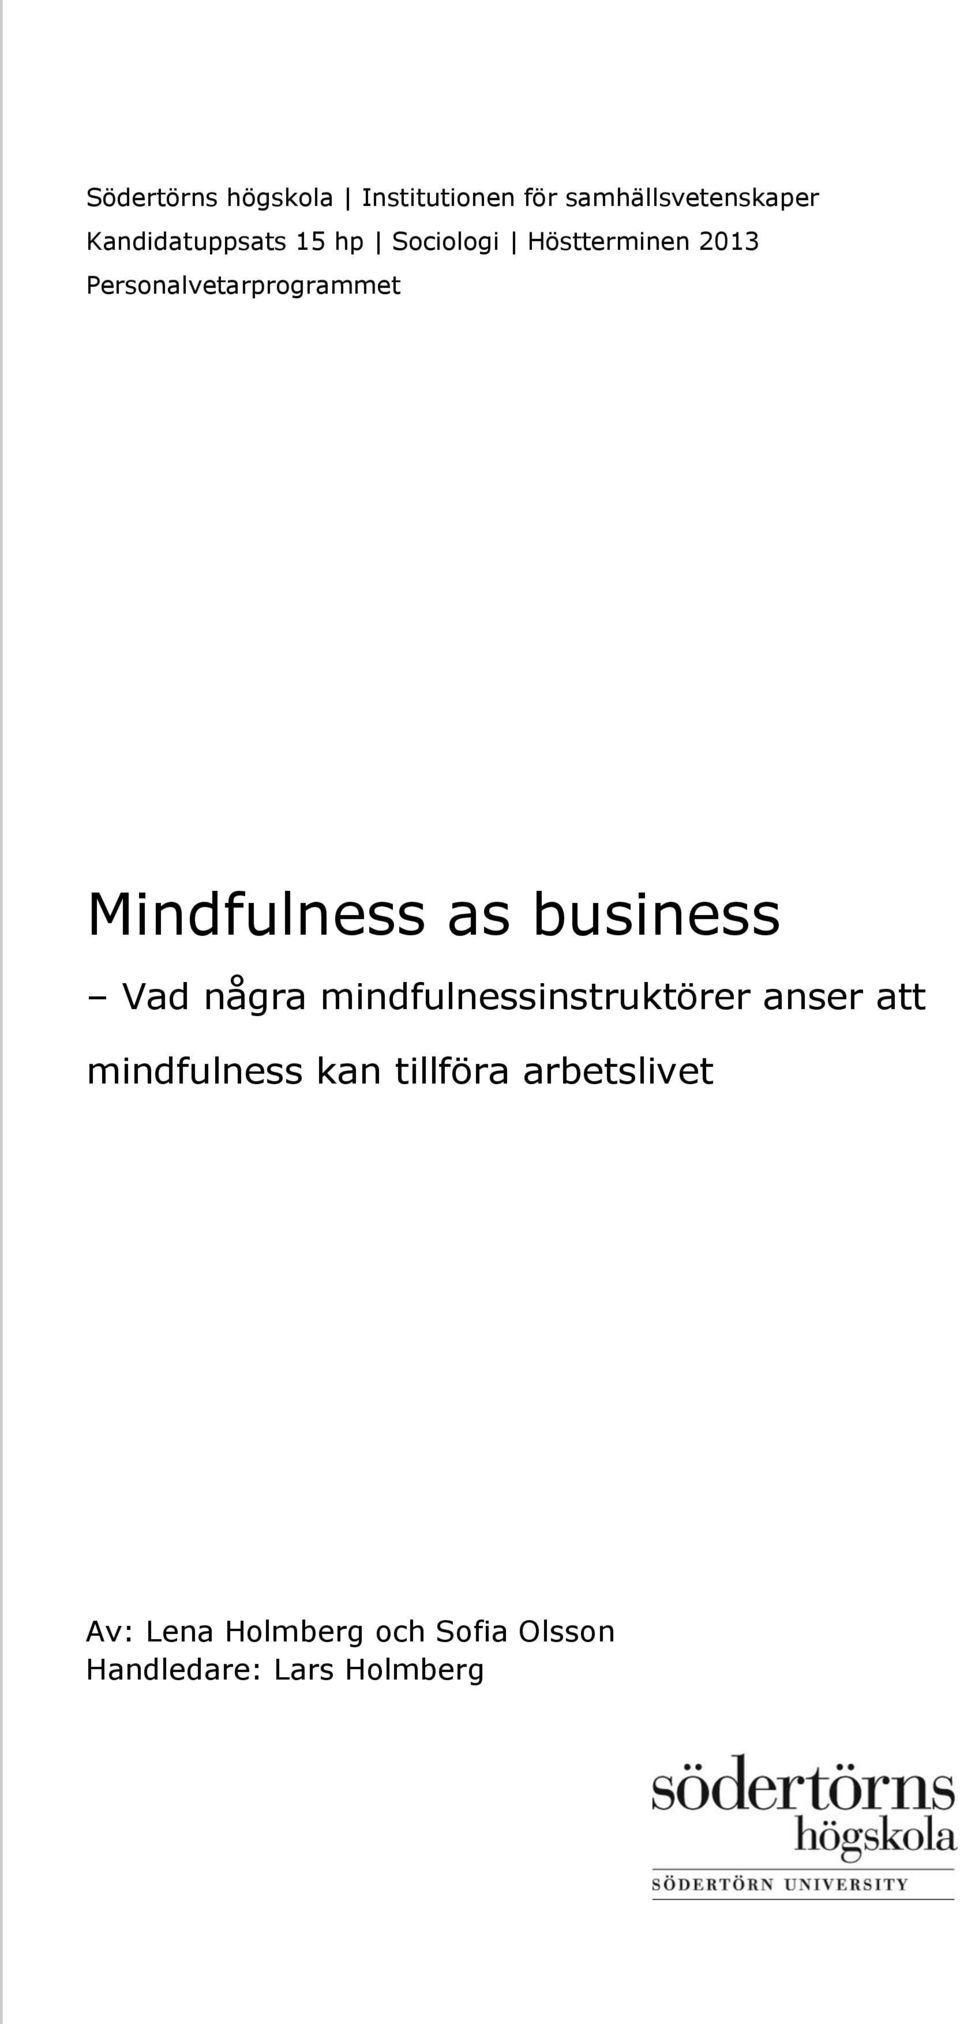 business Vad några mindfulnessinstruktörer anser att mindfulness kan